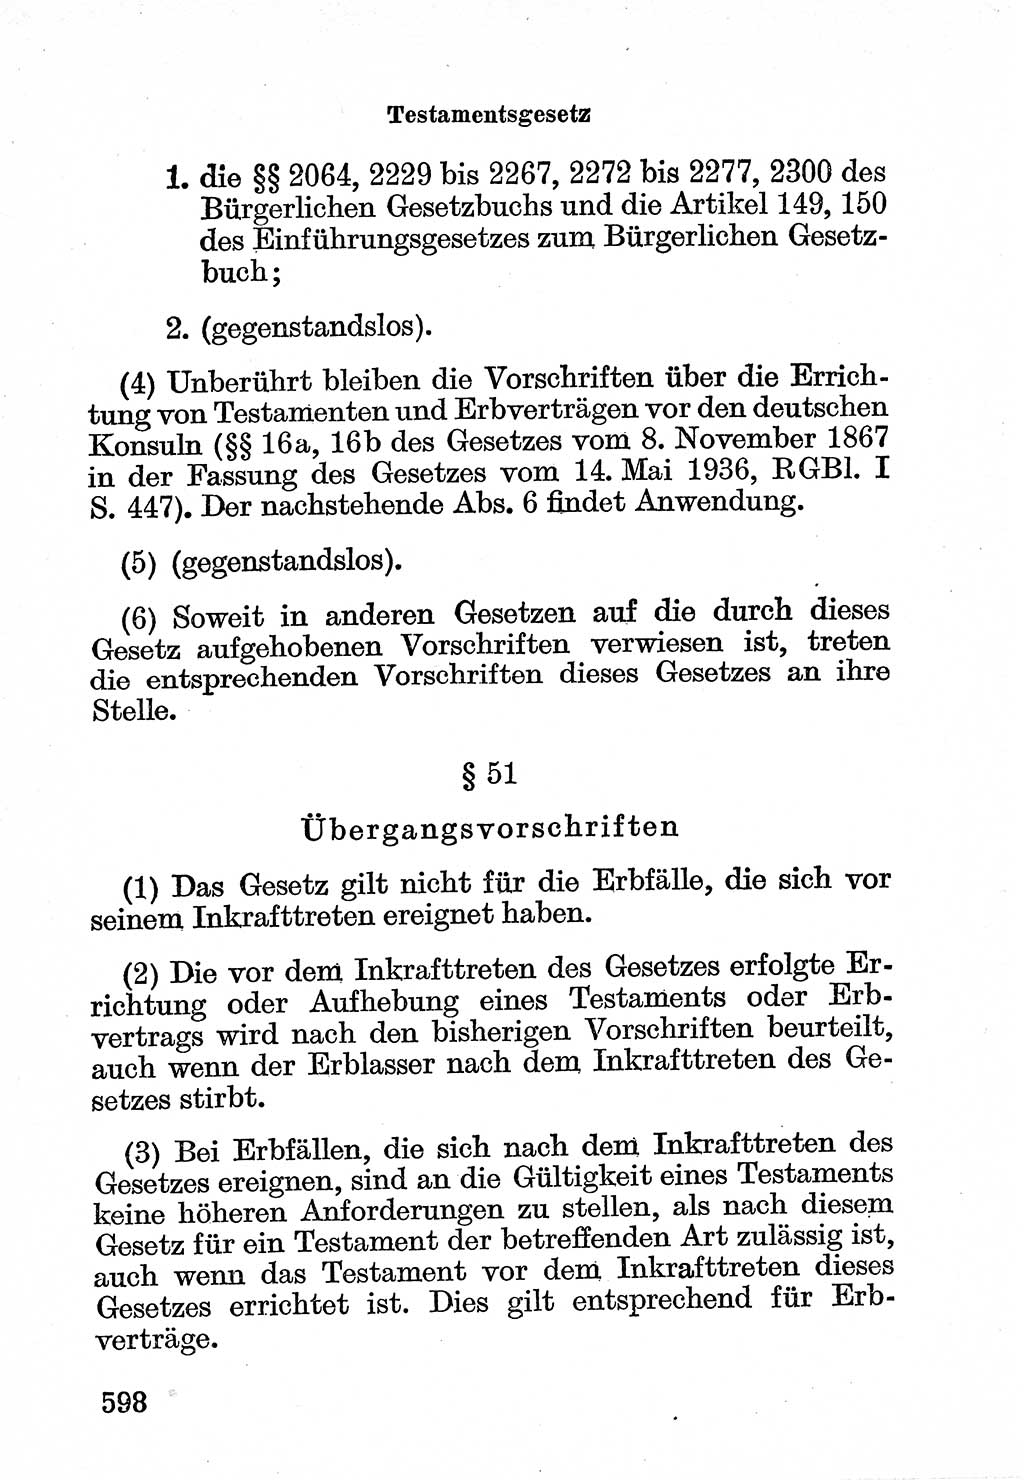 Bürgerliches Gesetzbuch (BGB) nebst wichtigen Nebengesetzen [Deutsche Demokratische Republik (DDR)] 1956, Seite 598 (BGB Nebenges. DDR 1956, S. 598)